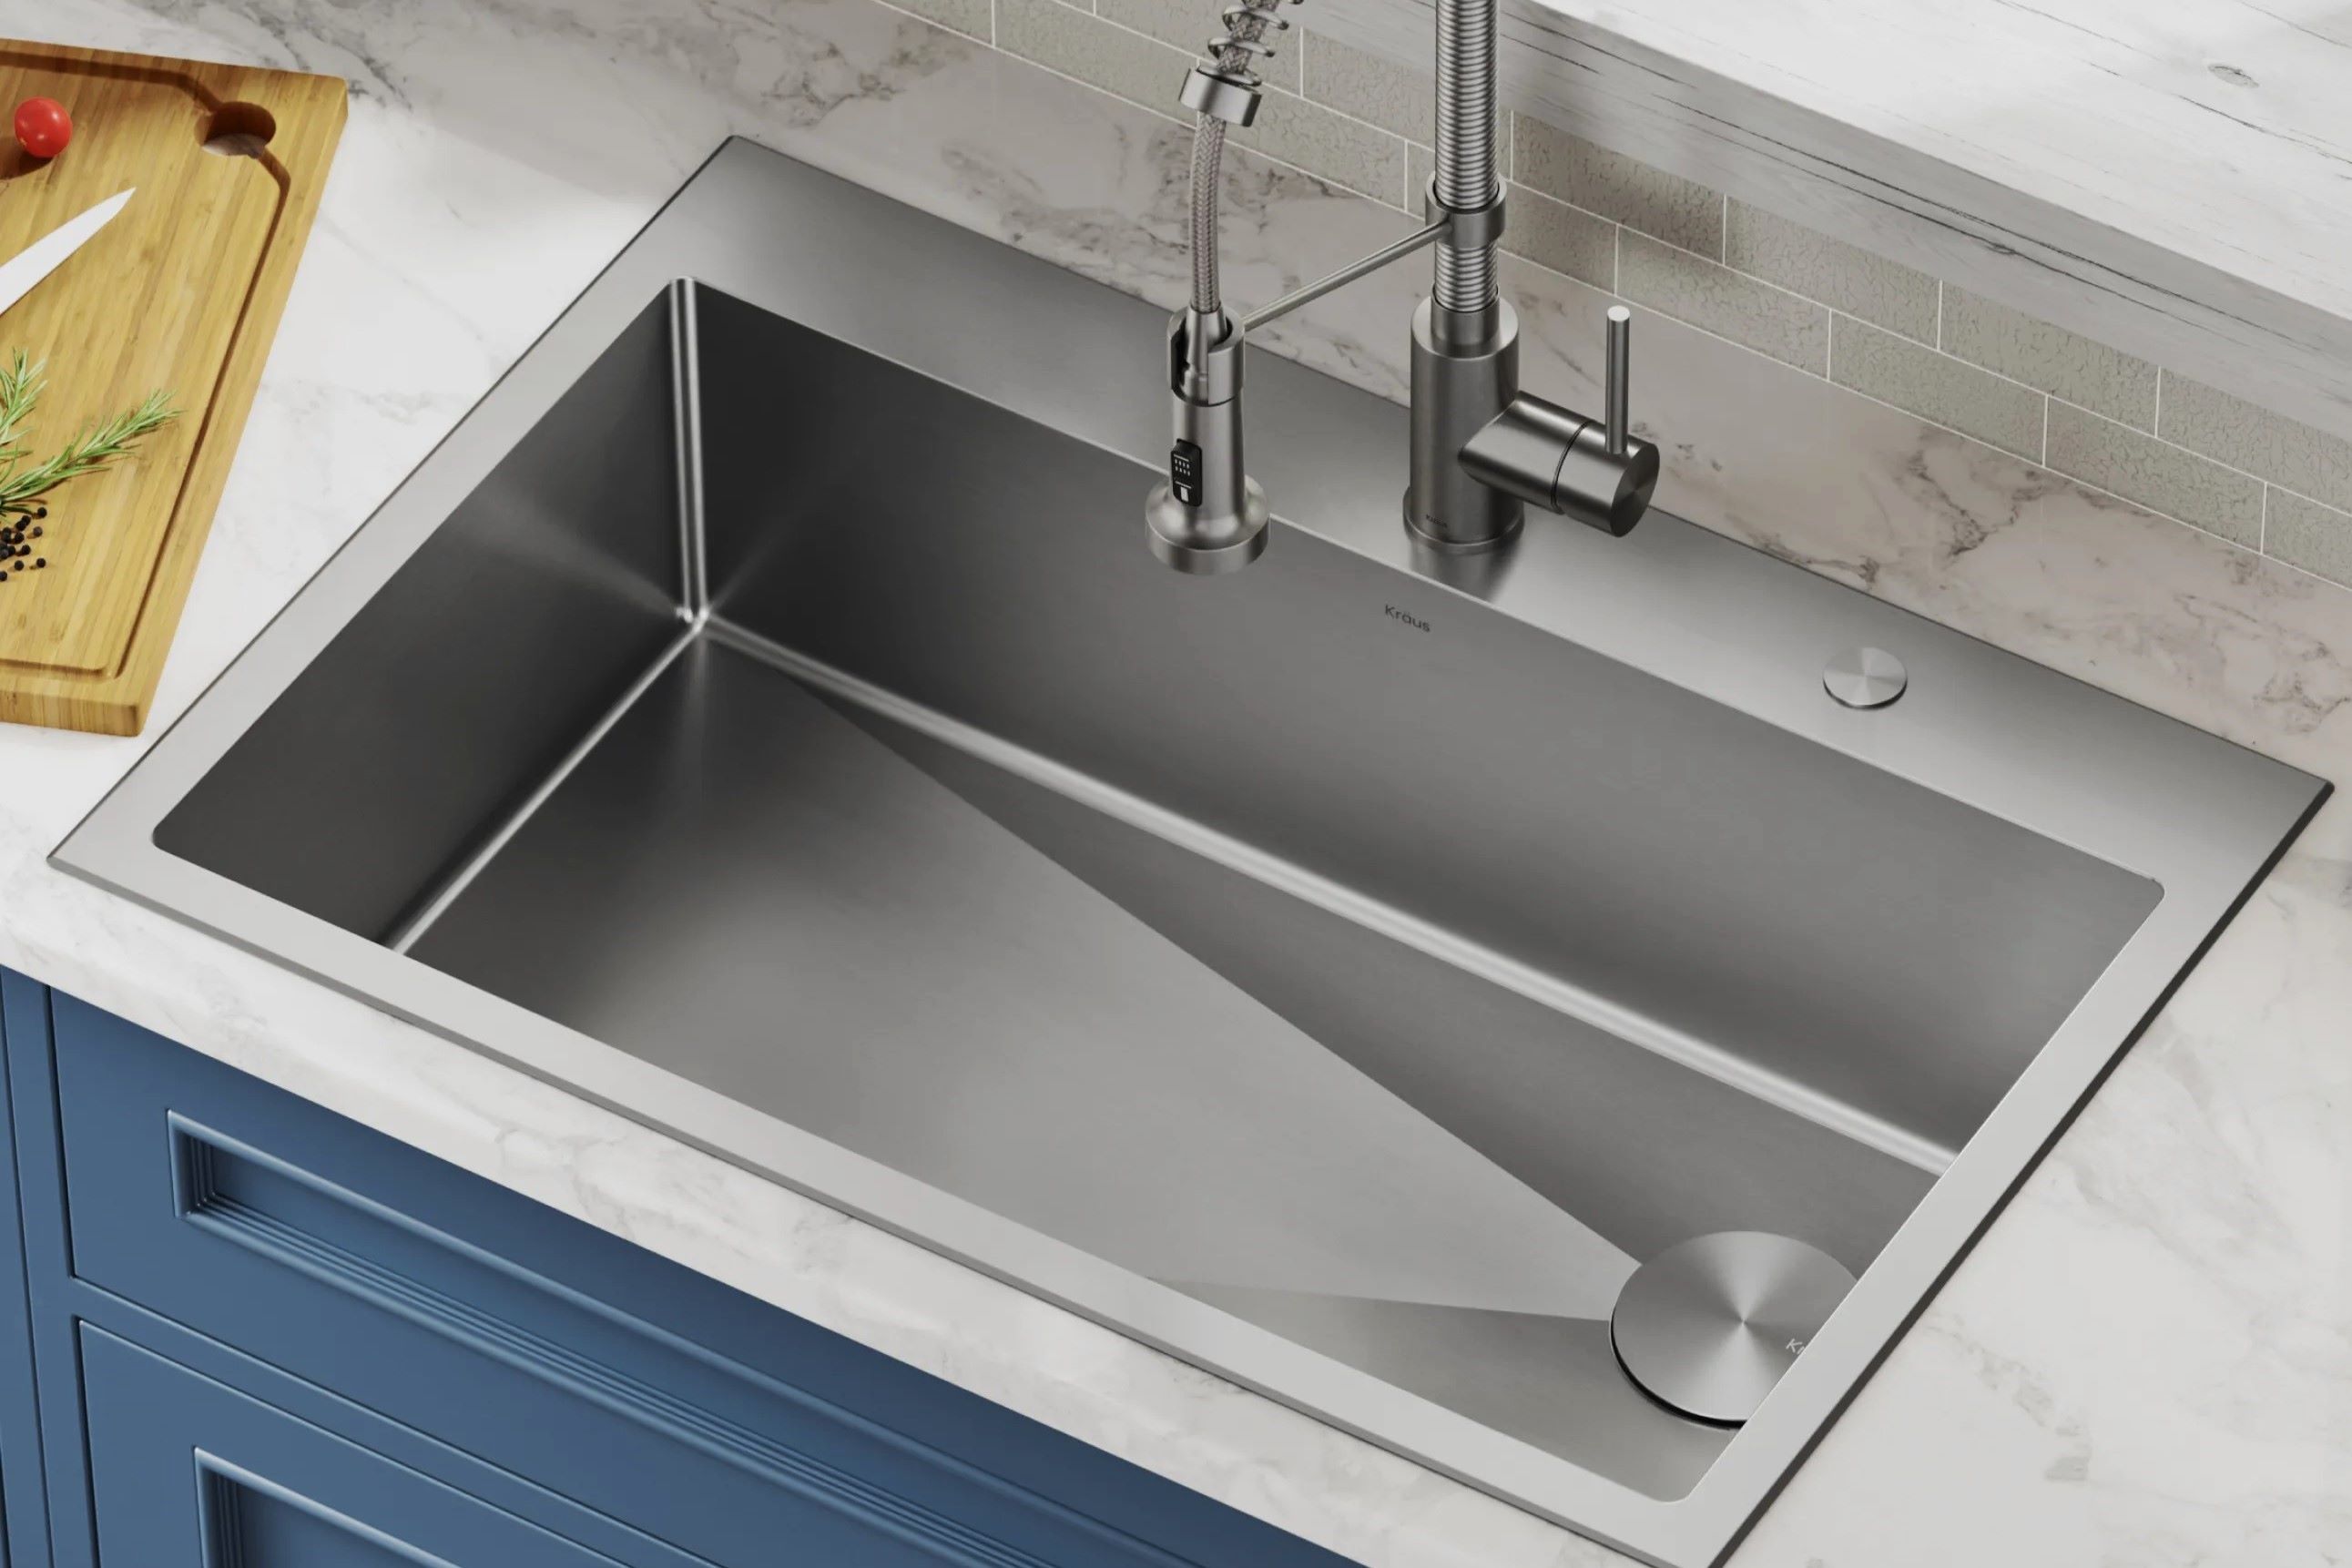 The Shocking Reason Behind A Kitchen Sink’s Instant Water Pressure Plummet!